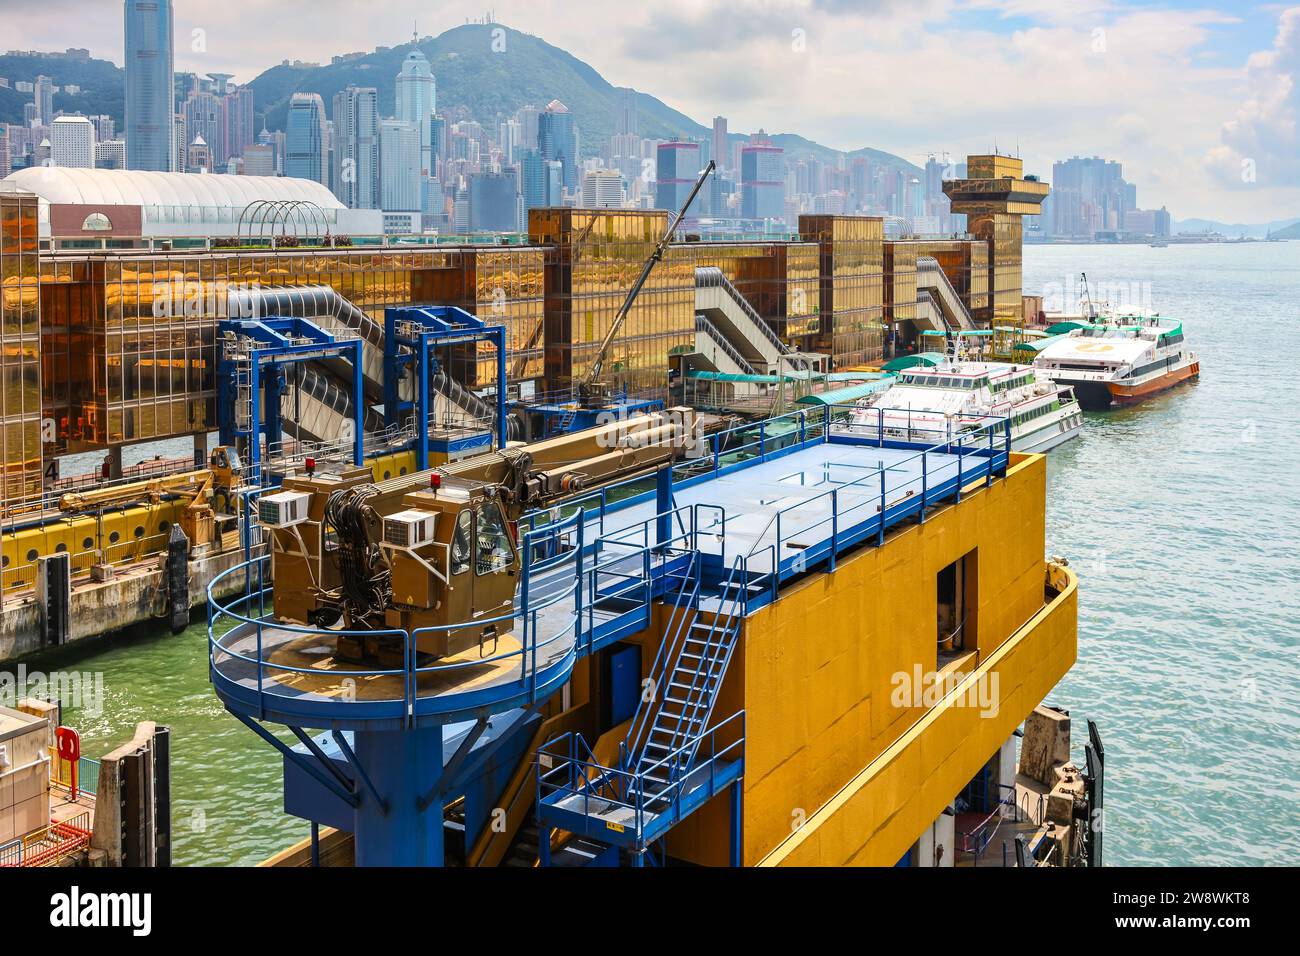 Hongkong, China - 23. Juli 2009: Fährhafen im Victoria Harbour. Transport zwischen Kowloon und Macau, China am goldenen China Ferry Terminal. Stockfoto